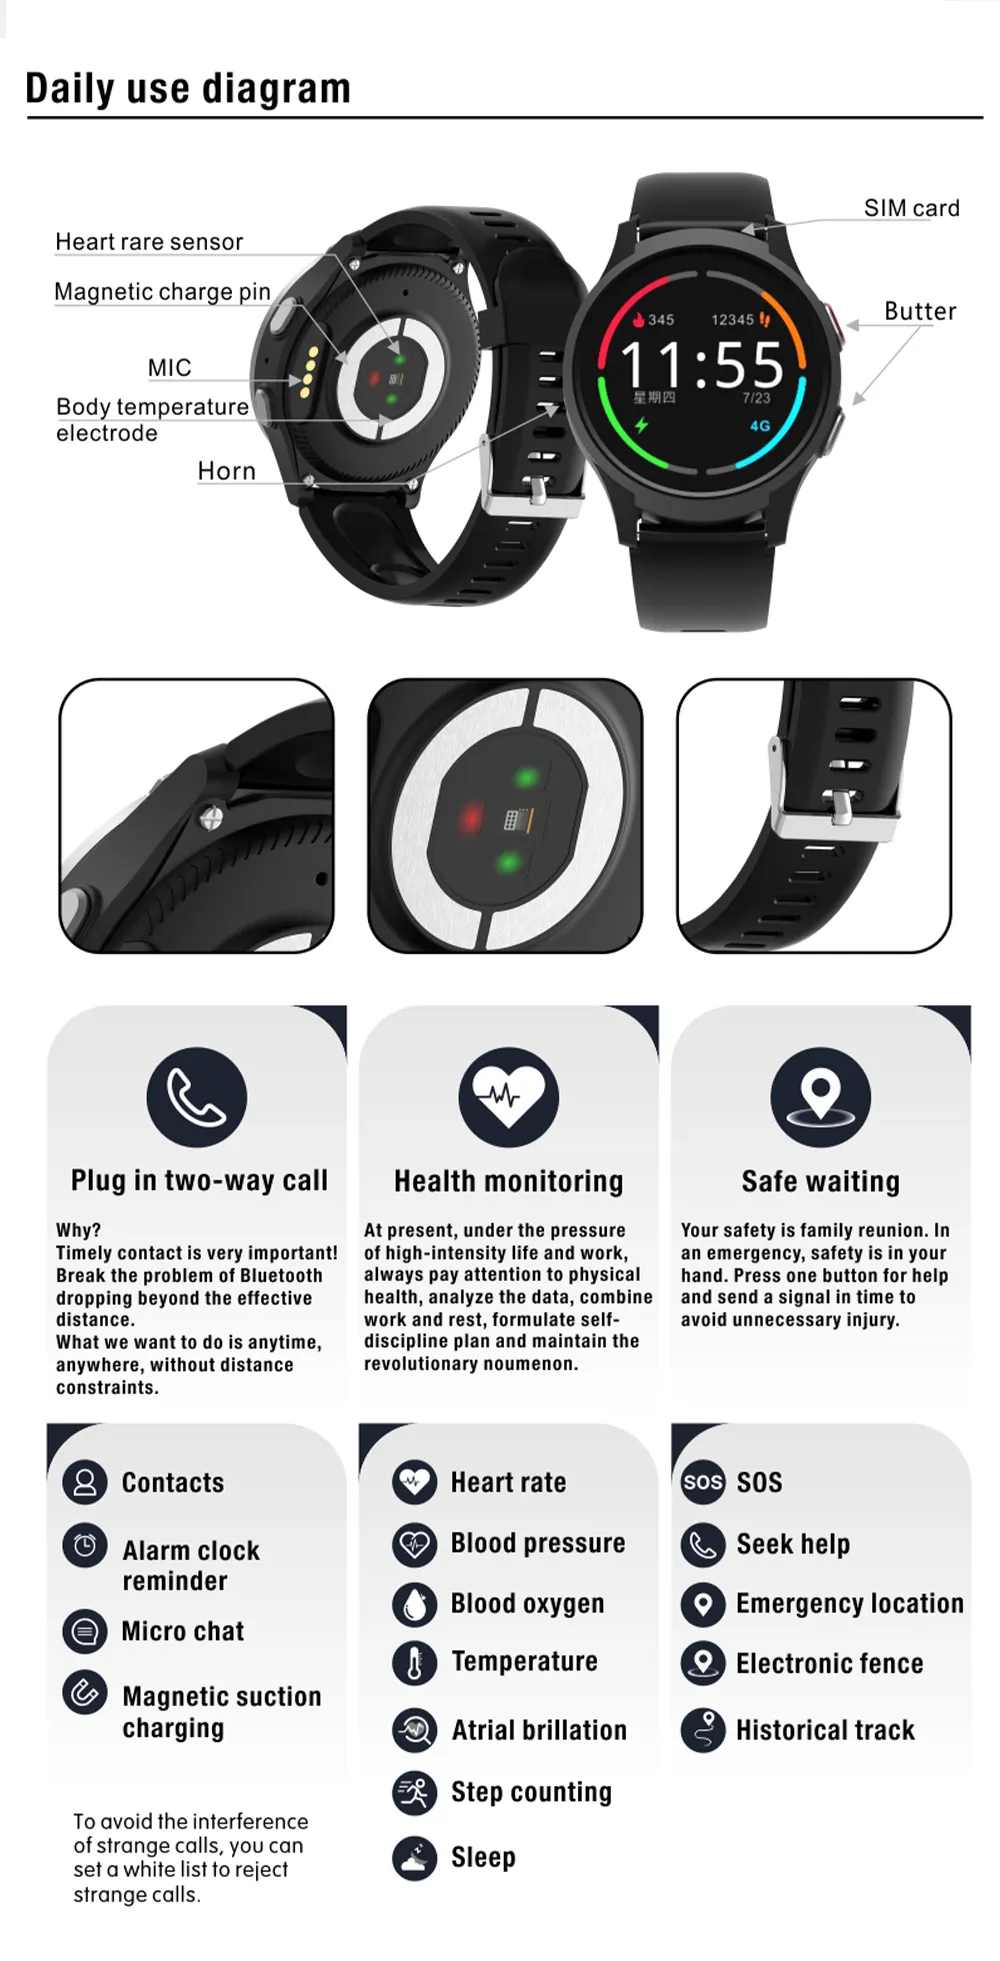 4G Gps Smartwatch Voor Ouderen VL18 Anti-Val Gps Wifi Tracking Valdetectie Alarm Sos Bellen Oudere Wearable Alarm Horloge